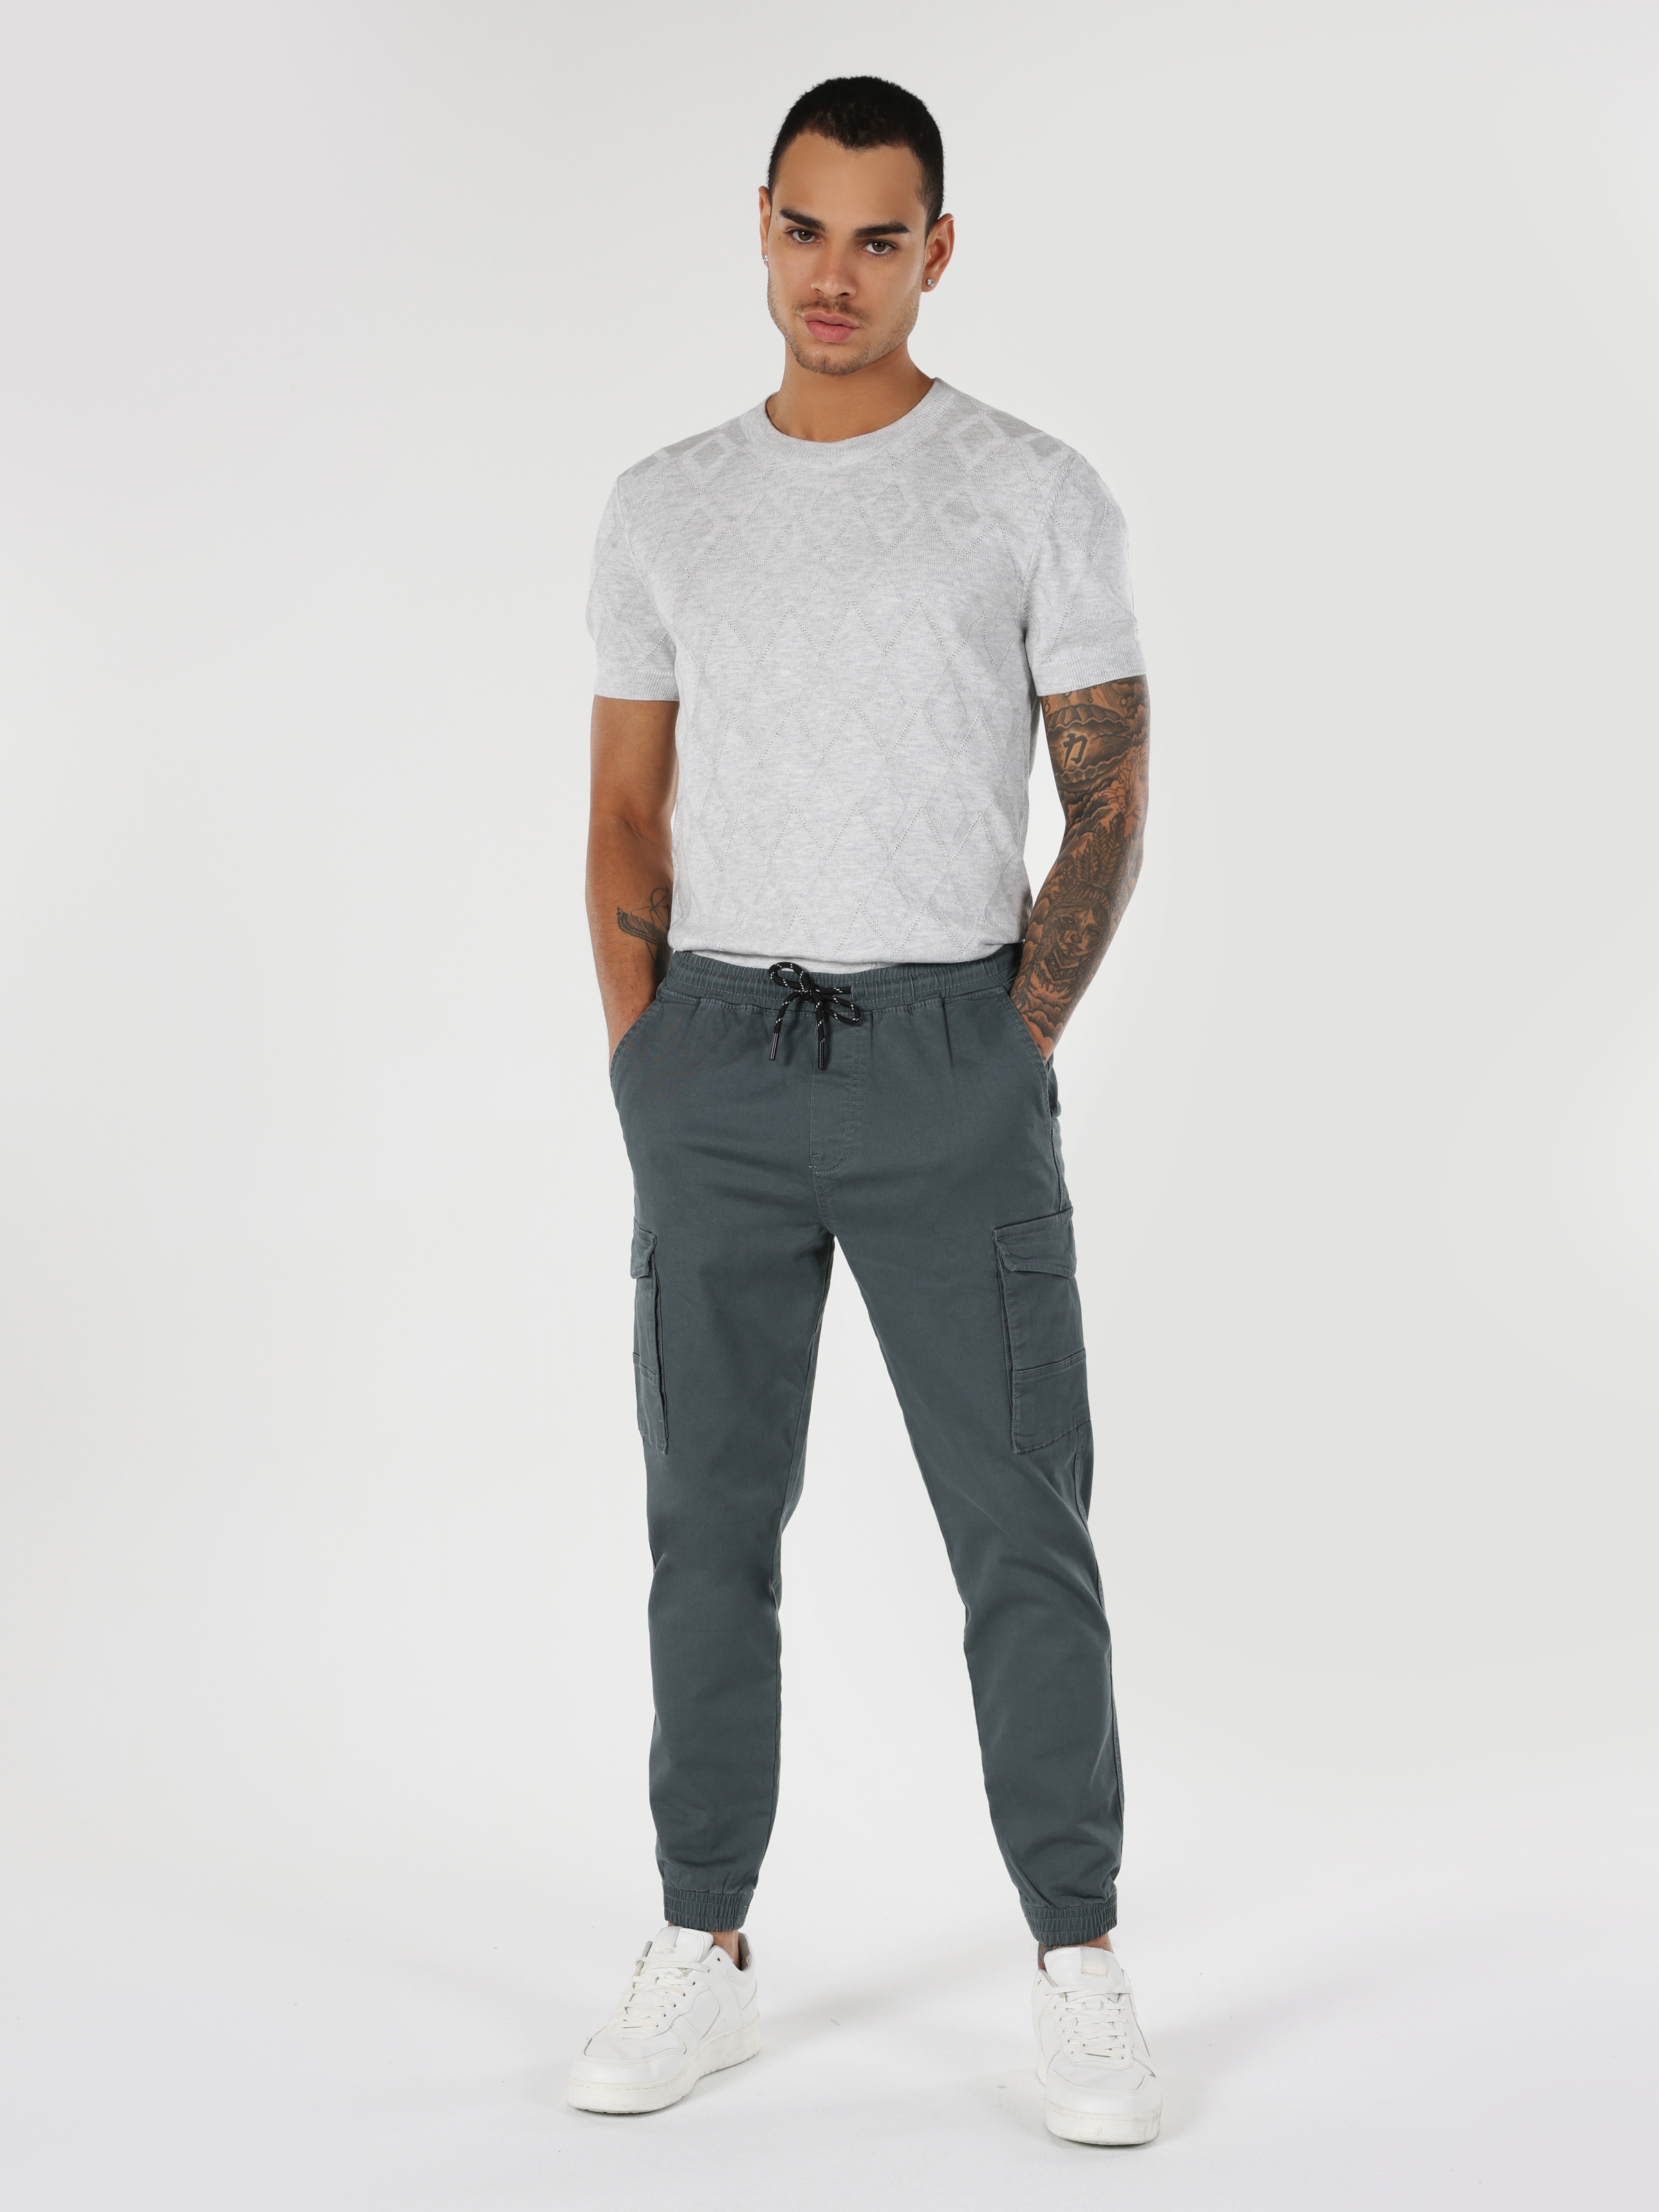 Afficher les détails de Pantalon Homme Bleu Coupe Slim Taille Moyenne Poche Cargo Jambe Élastique